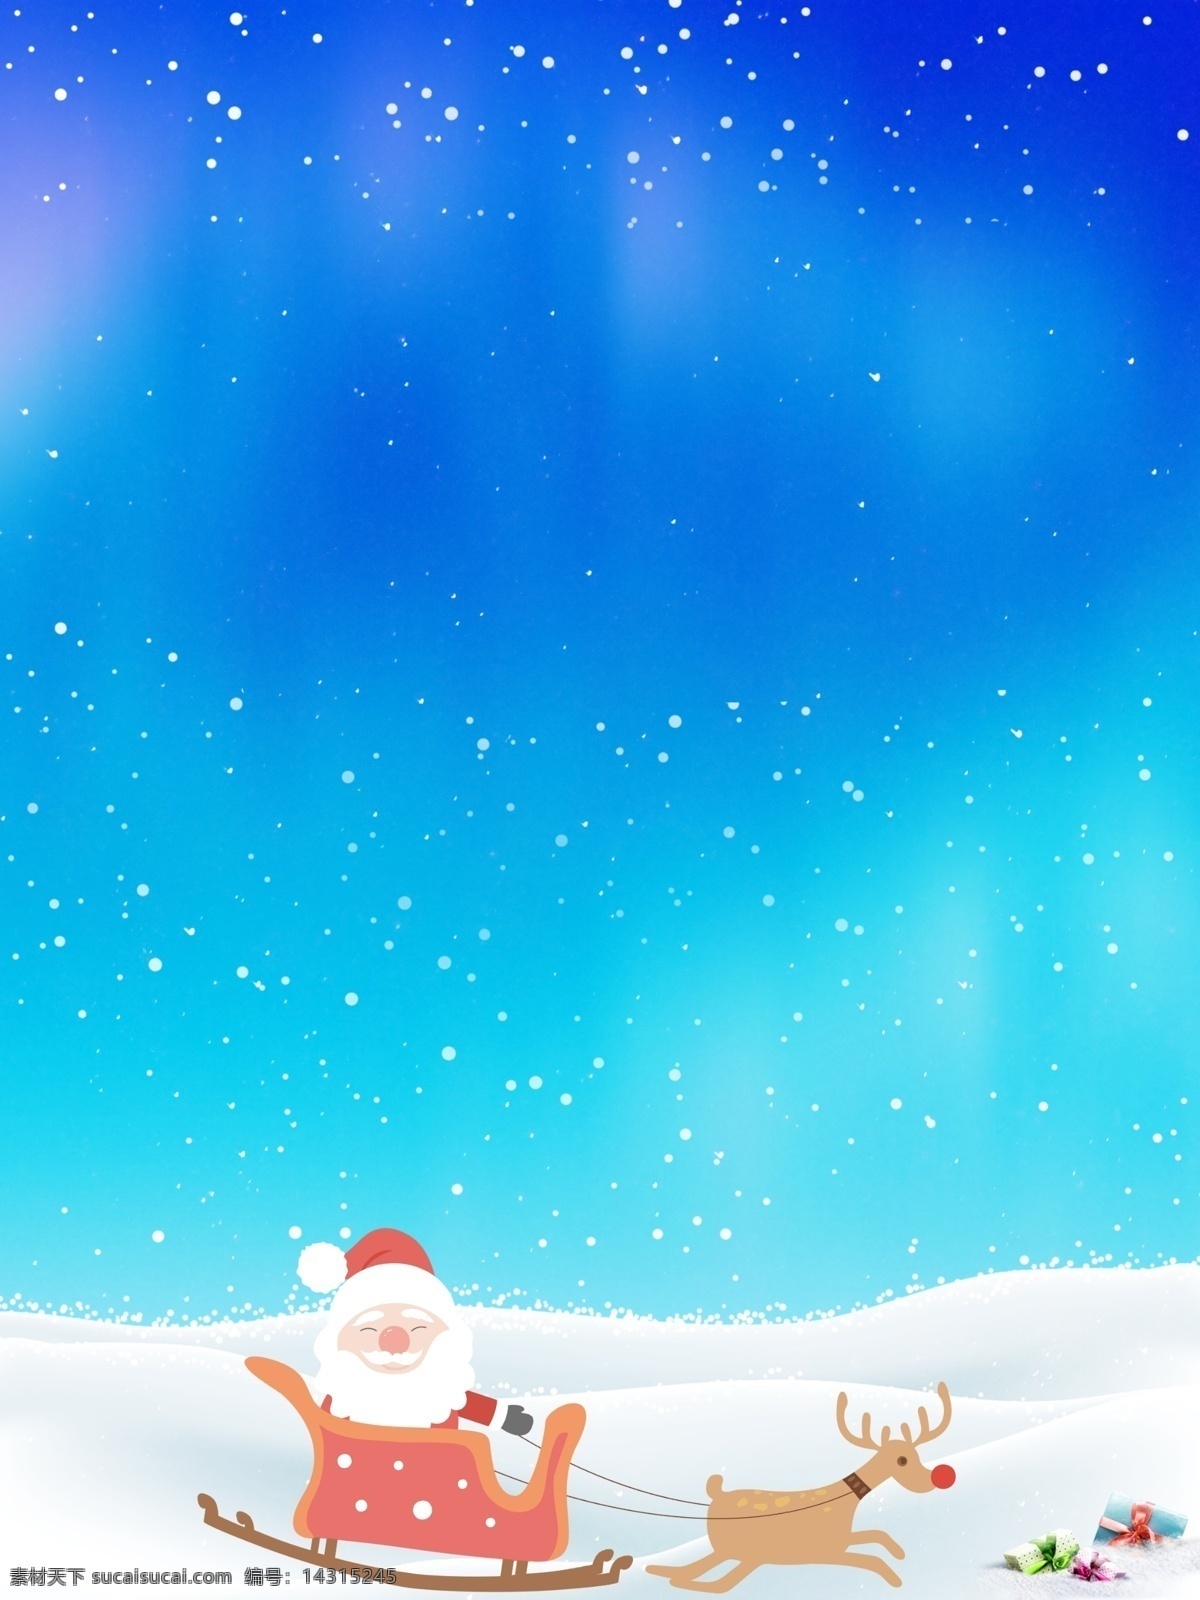 蓝色天空 下 圣诞老人 平安夜 背景 蓝色 天空 雪花 背景素材 雪地 雪橇 圣诞节背景 圣诞来了 圣诞背景 圣诞活动背景 节日背景 广告背景